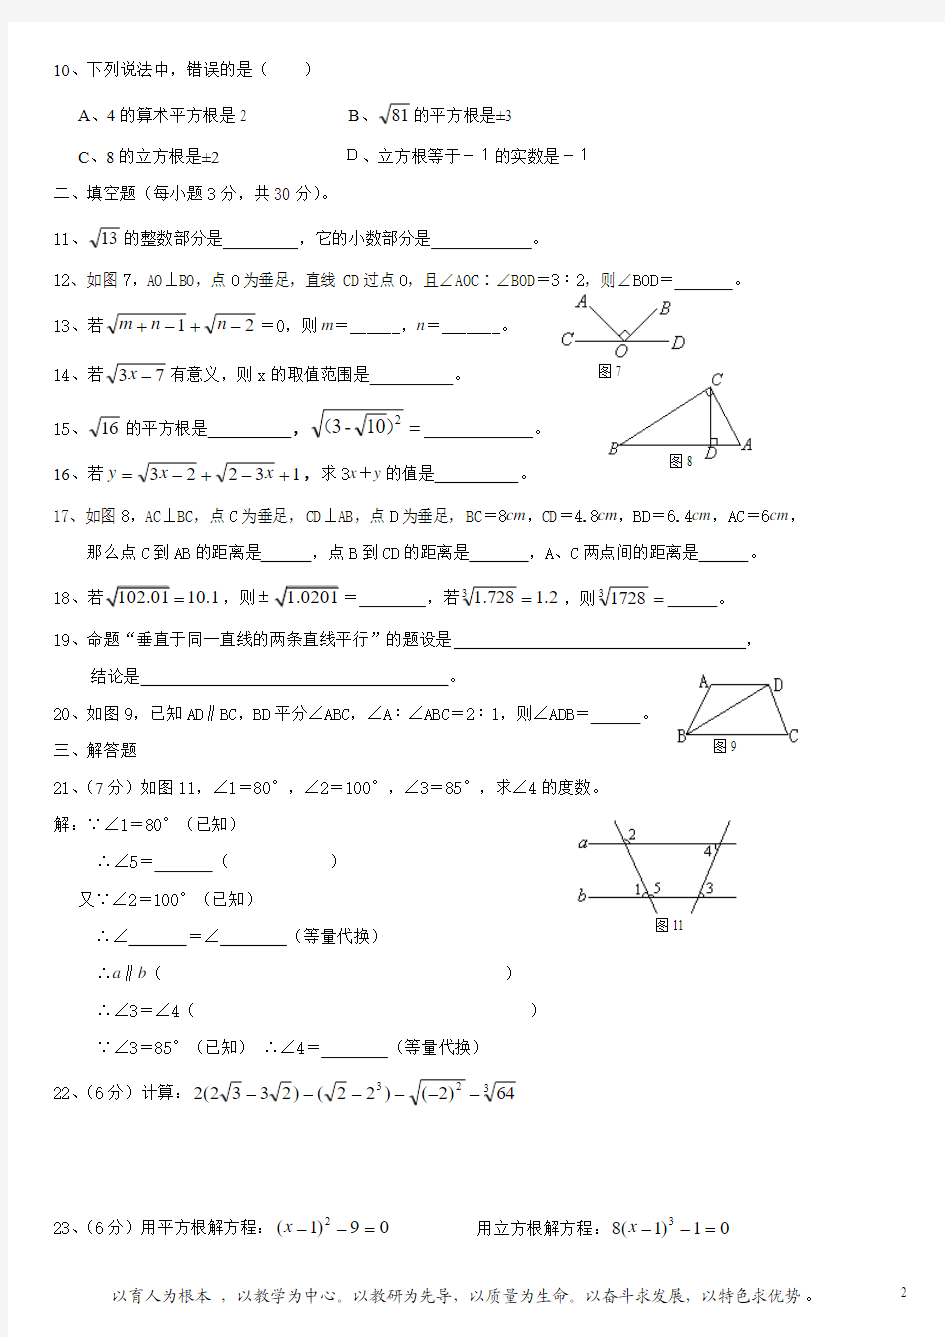 七年级下册数学测试题(平行线和相交线_实数)